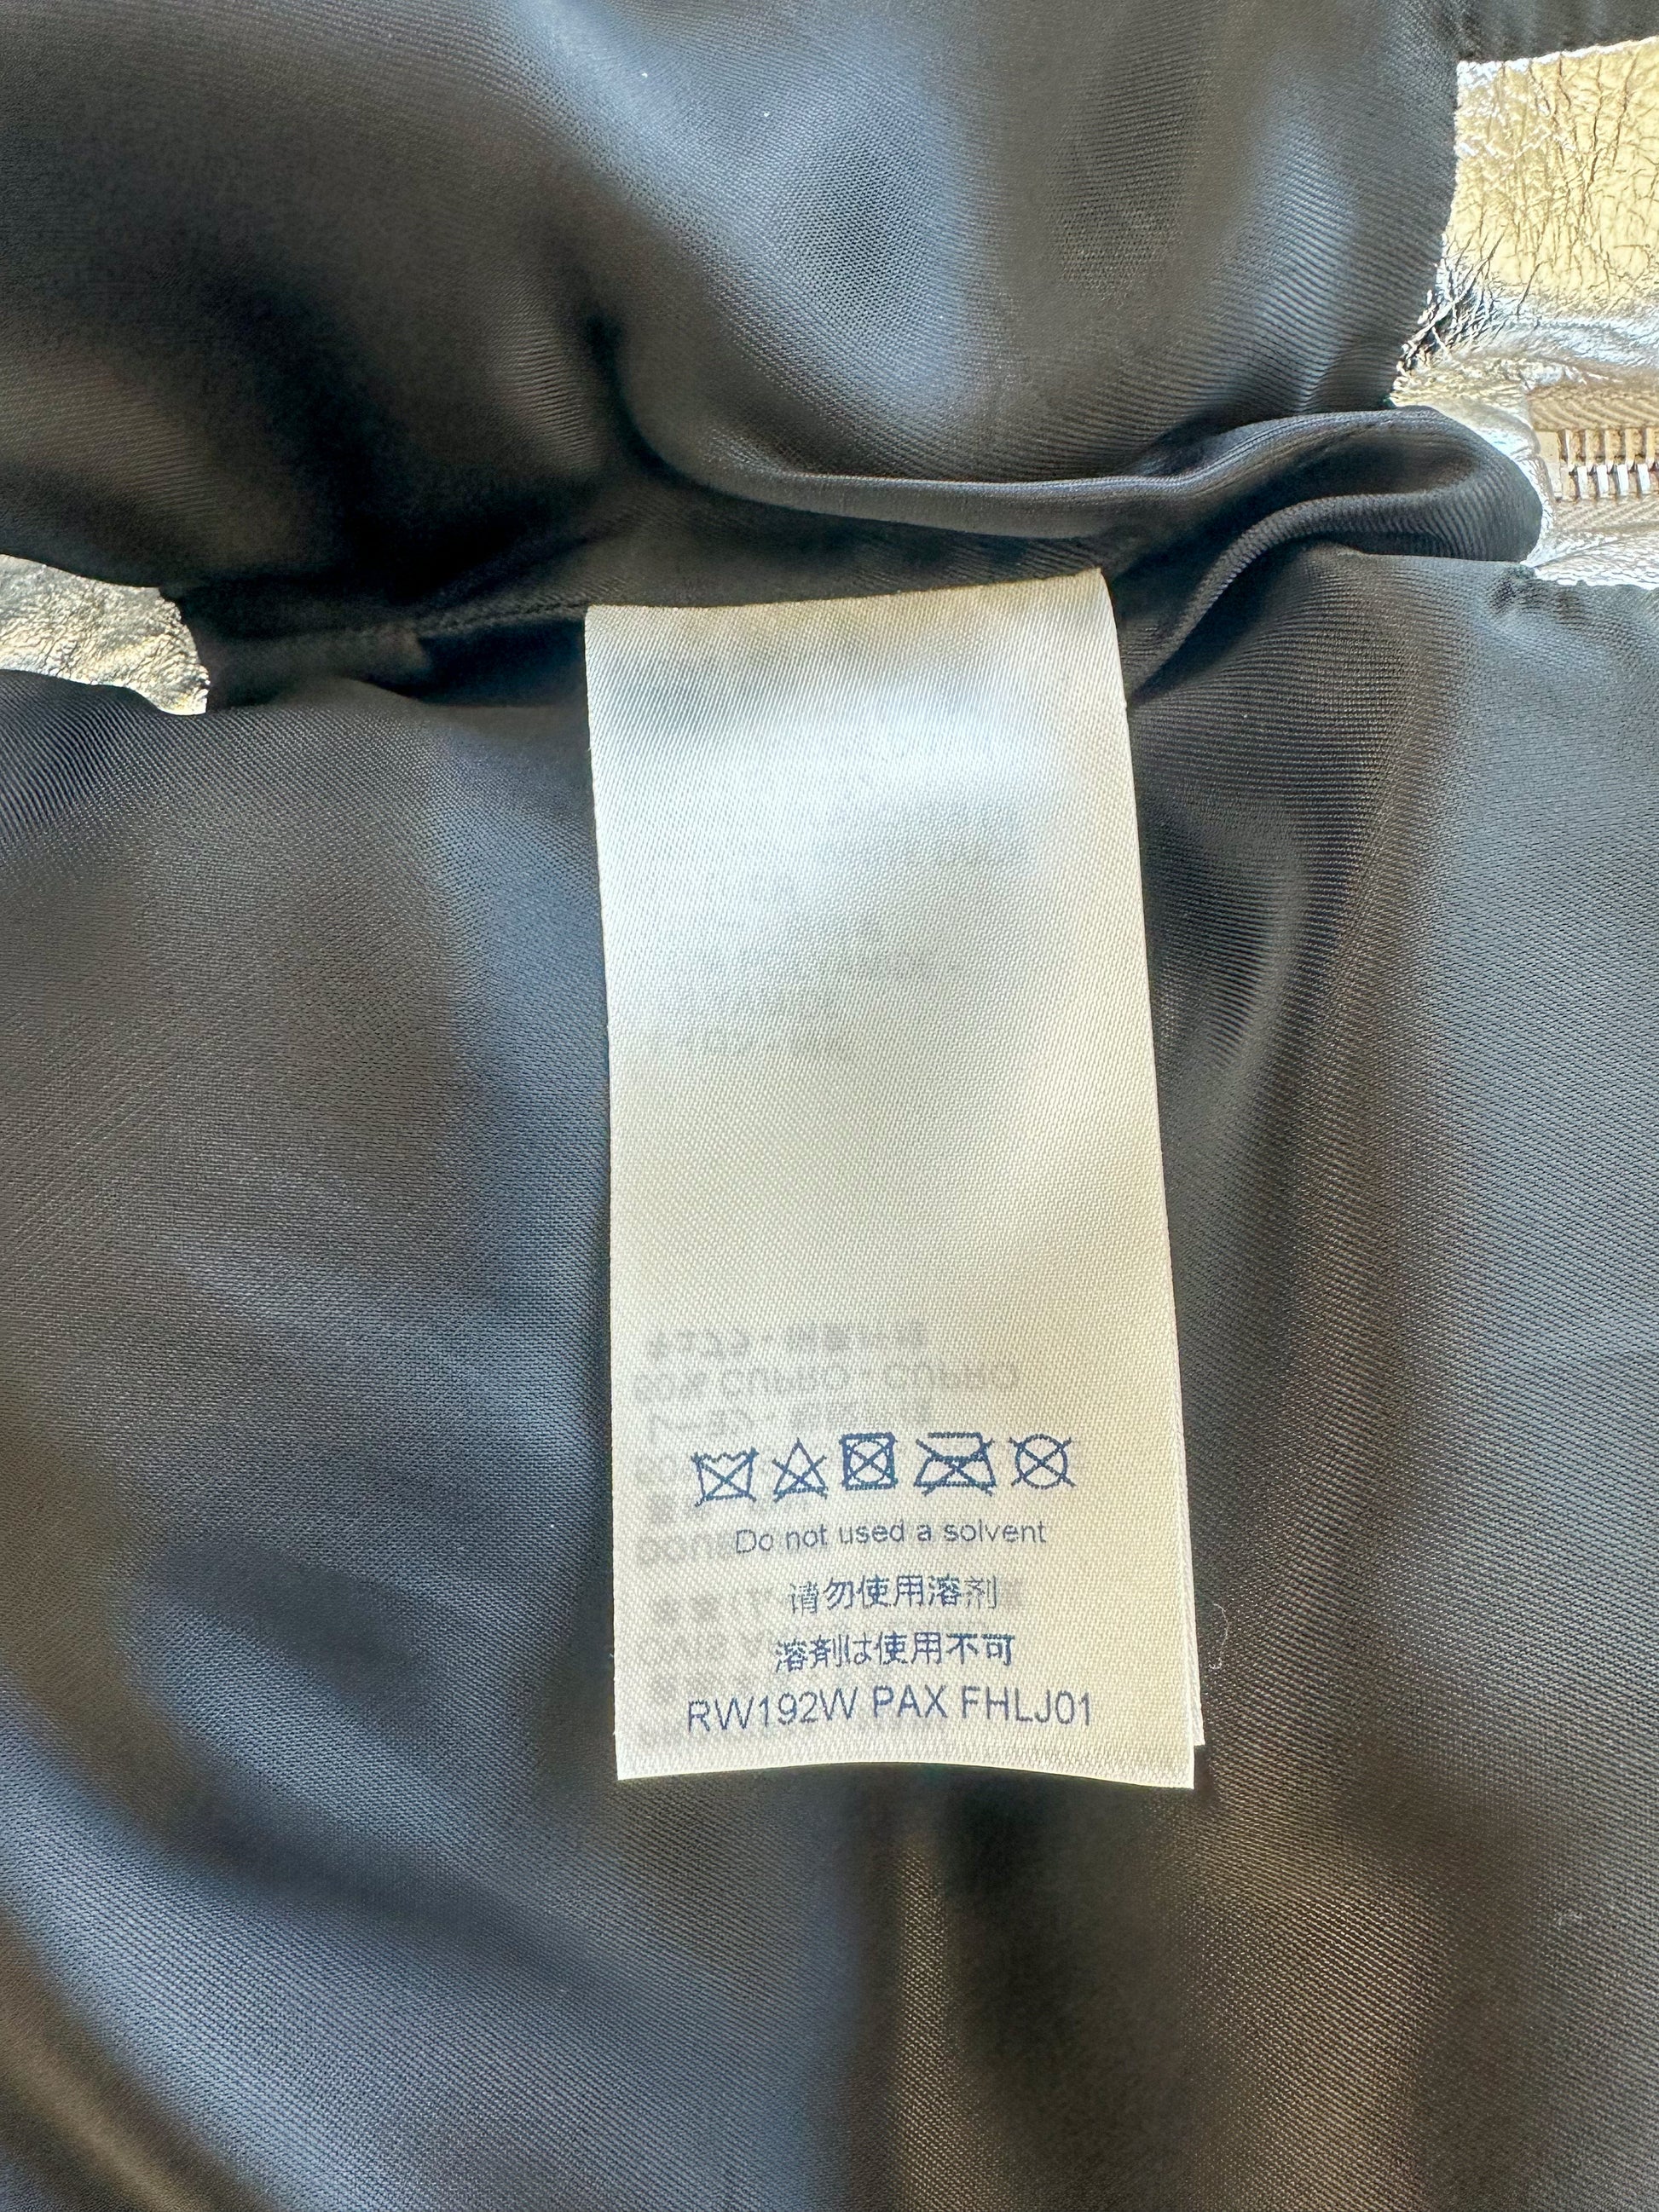 Louis Vuitton Metallic Monogram Flowers Reversible Puffer Jacket Silver. Size 36